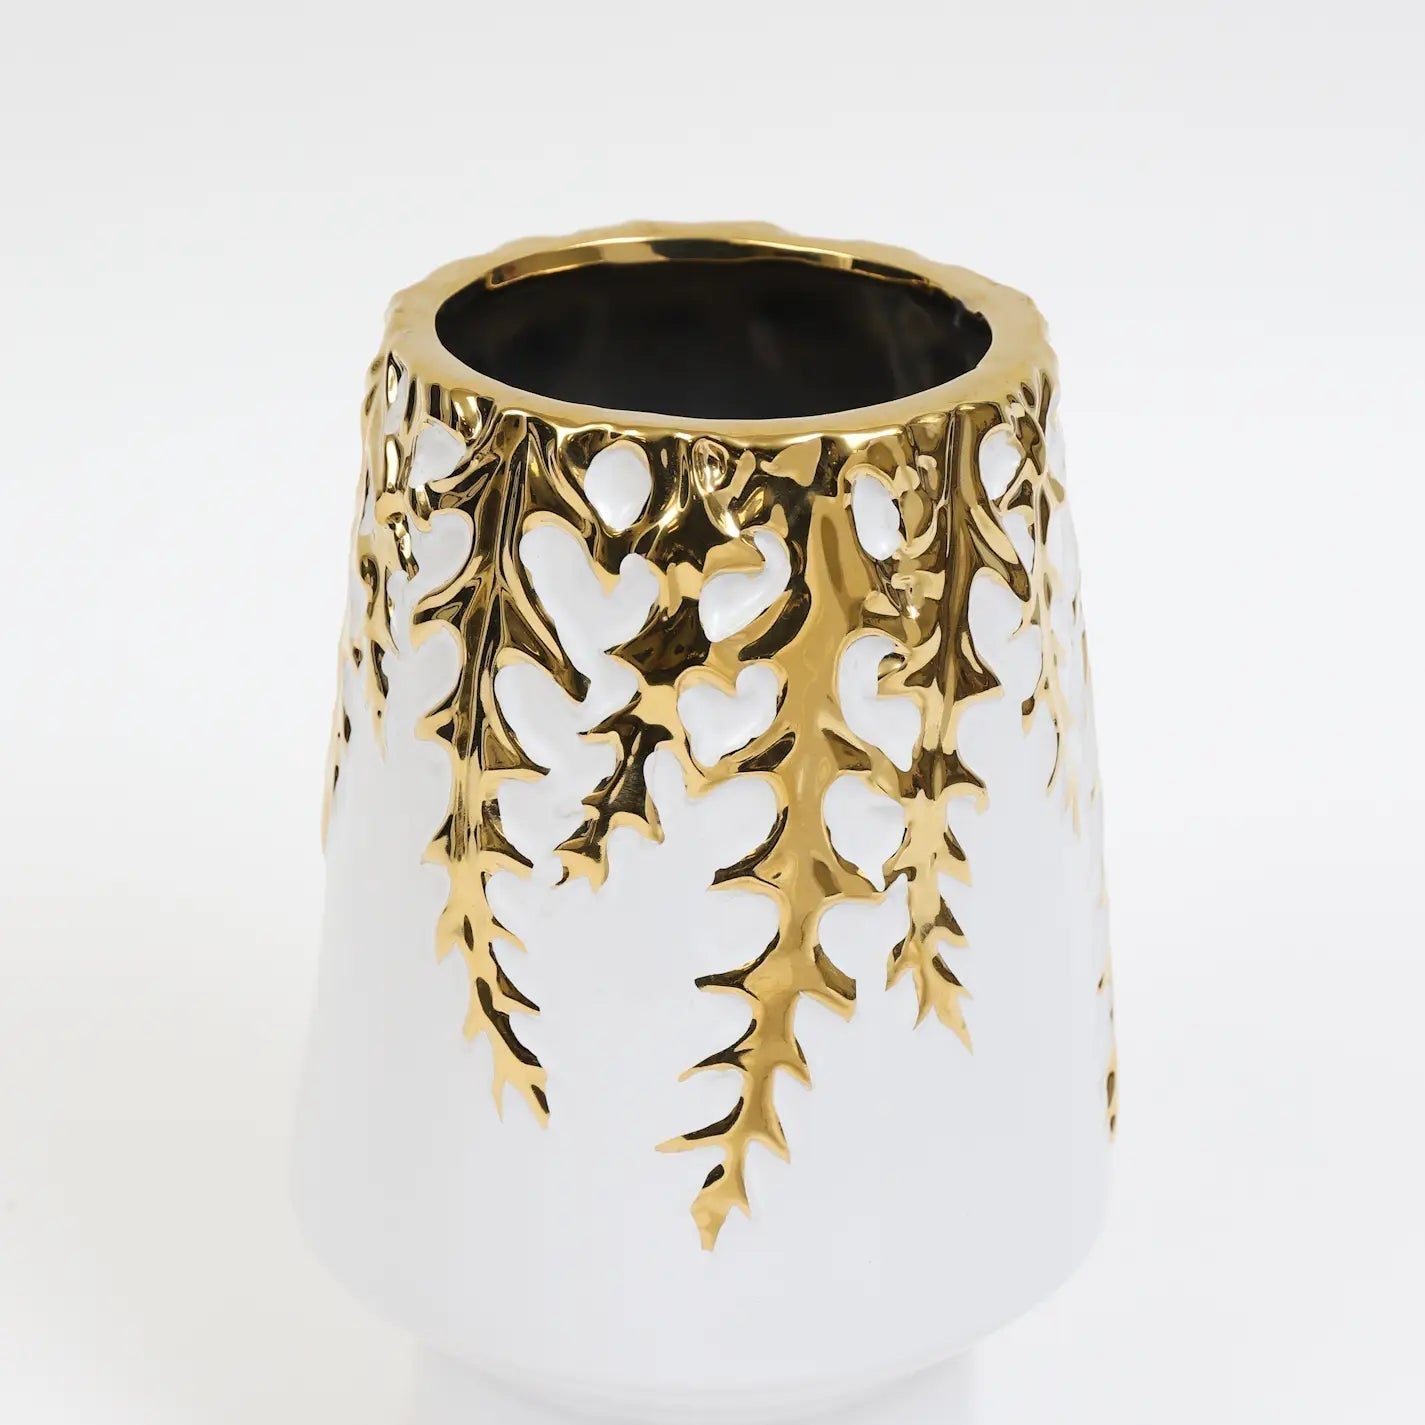 White Ceramic Vase Gold Design Vases High Class Touch - Home Decor 